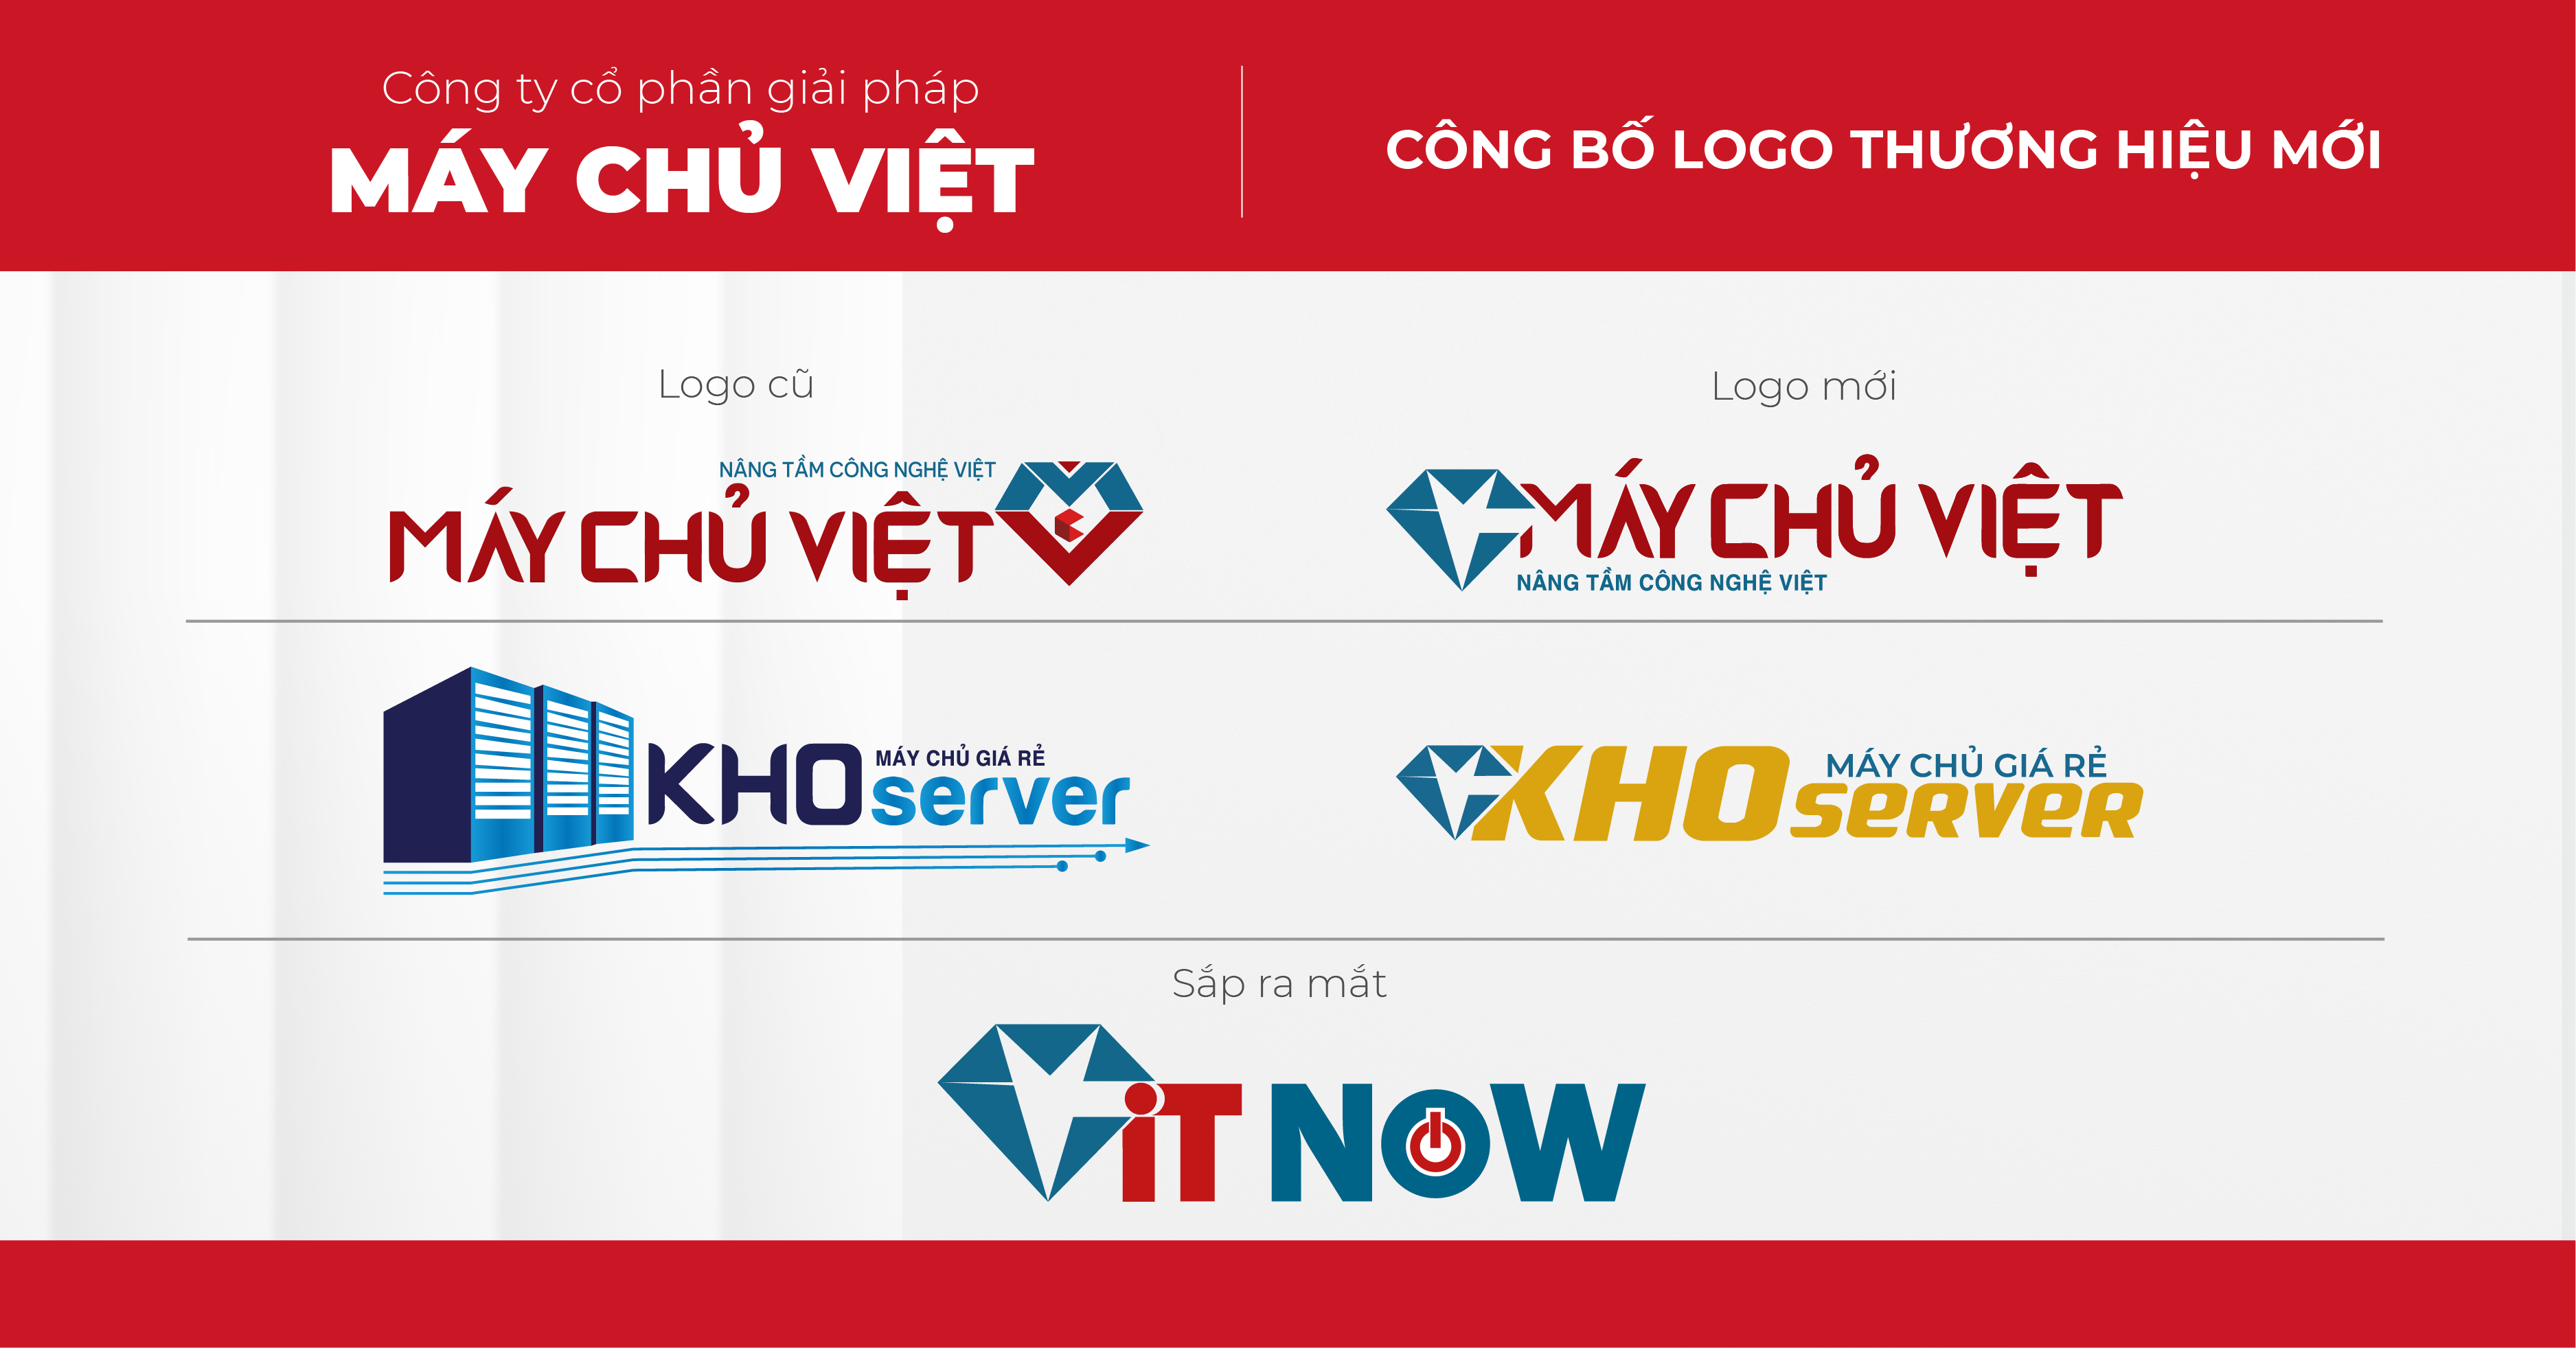 Máy Chủ Việt chính thức thay đổi LOGO nhận diện thương hiệu 